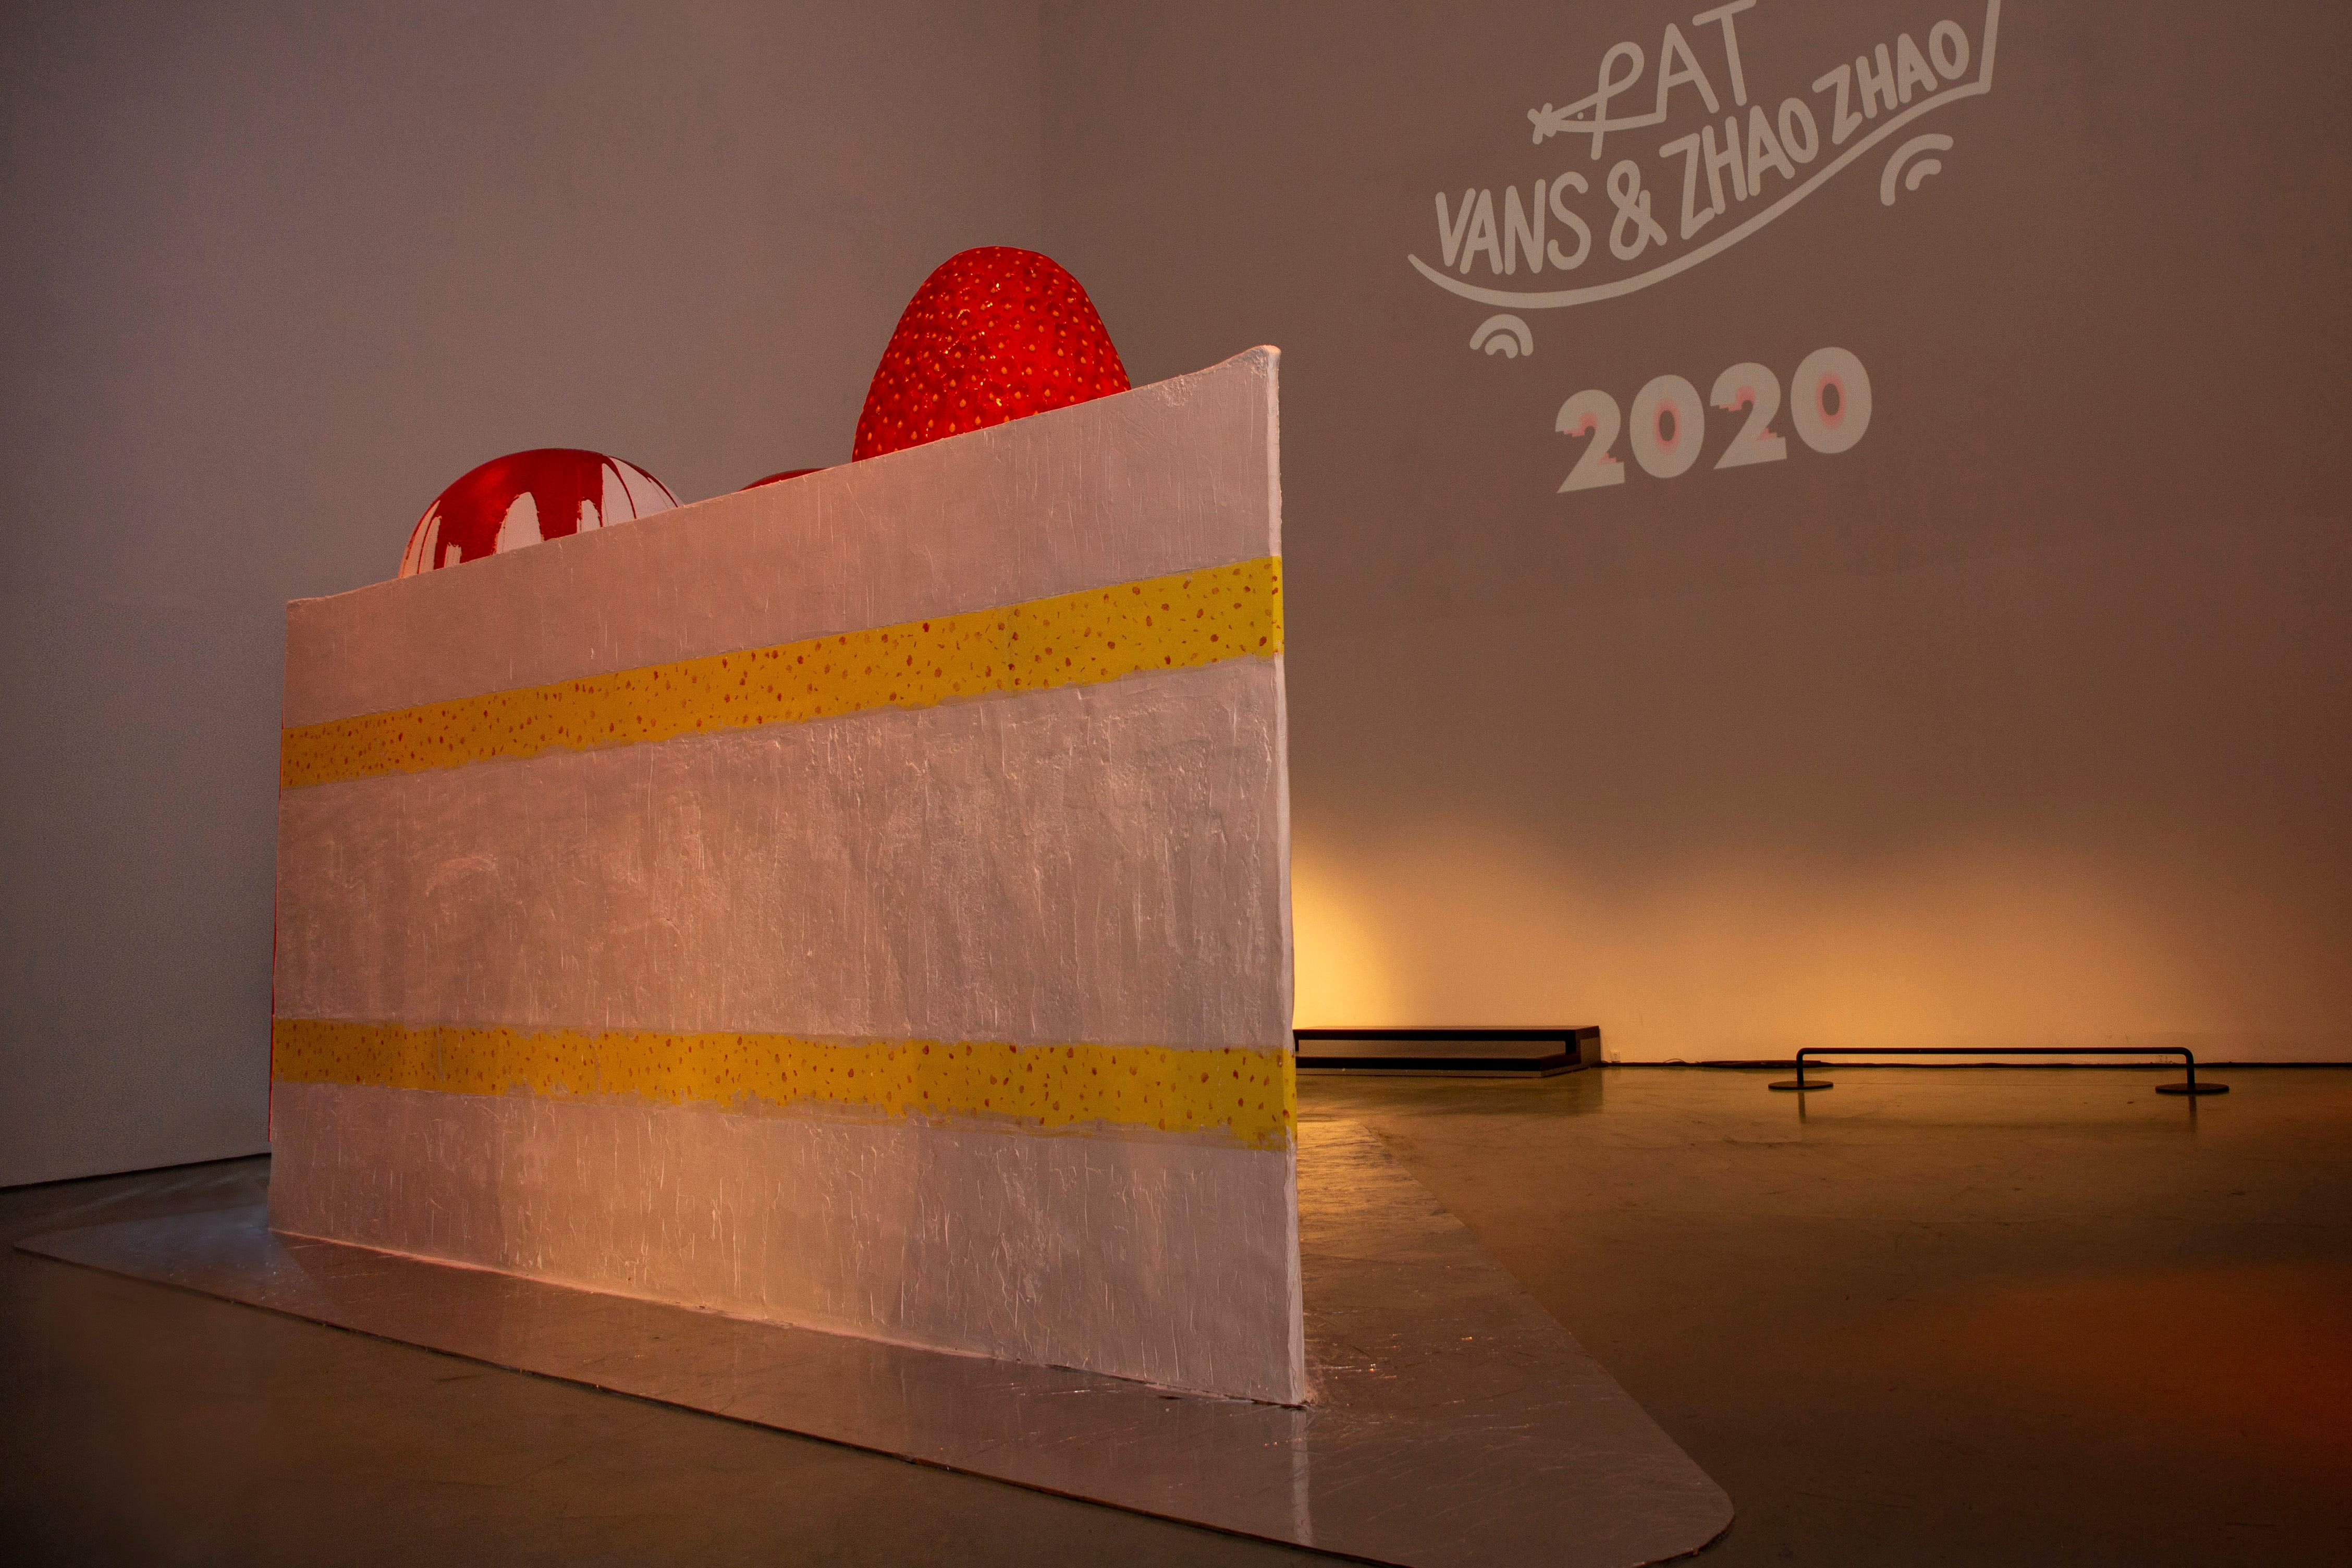 VANS 2020 鼠年系列联名展览现场回顾